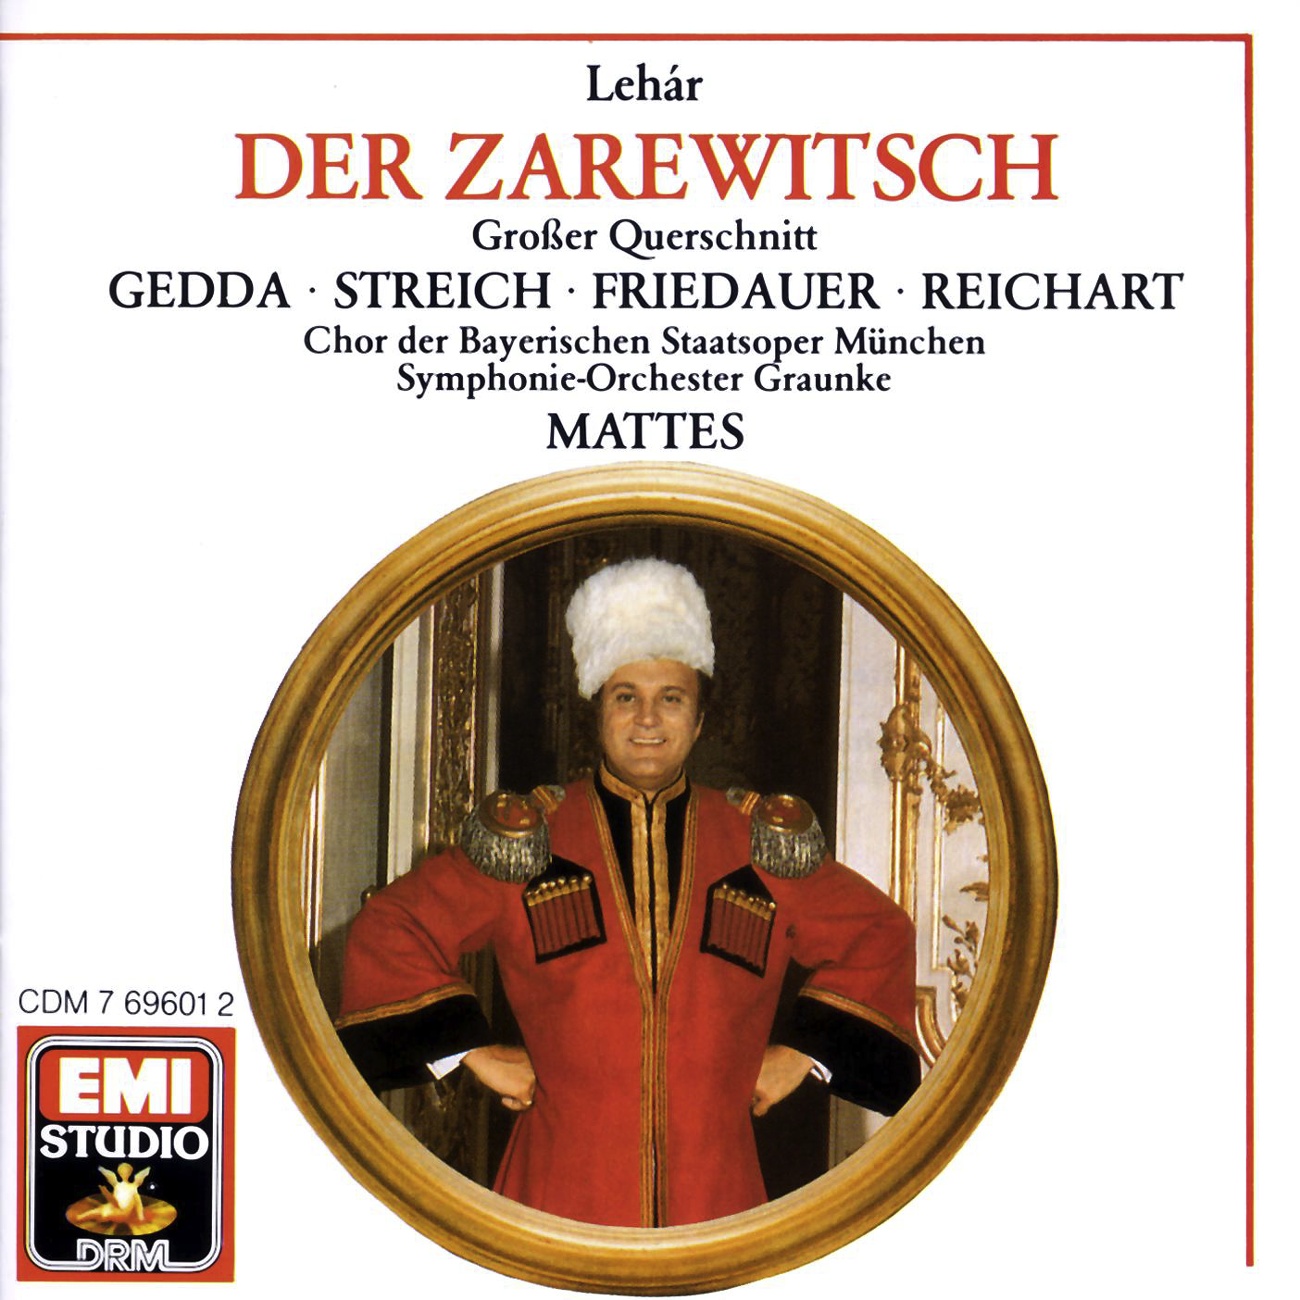 Der Zarewitsch  Highlights 1988 Digital Remaster, Zweiter Akt: Wir Trscherkessen brauchen weder Zeit noch Geld Chor